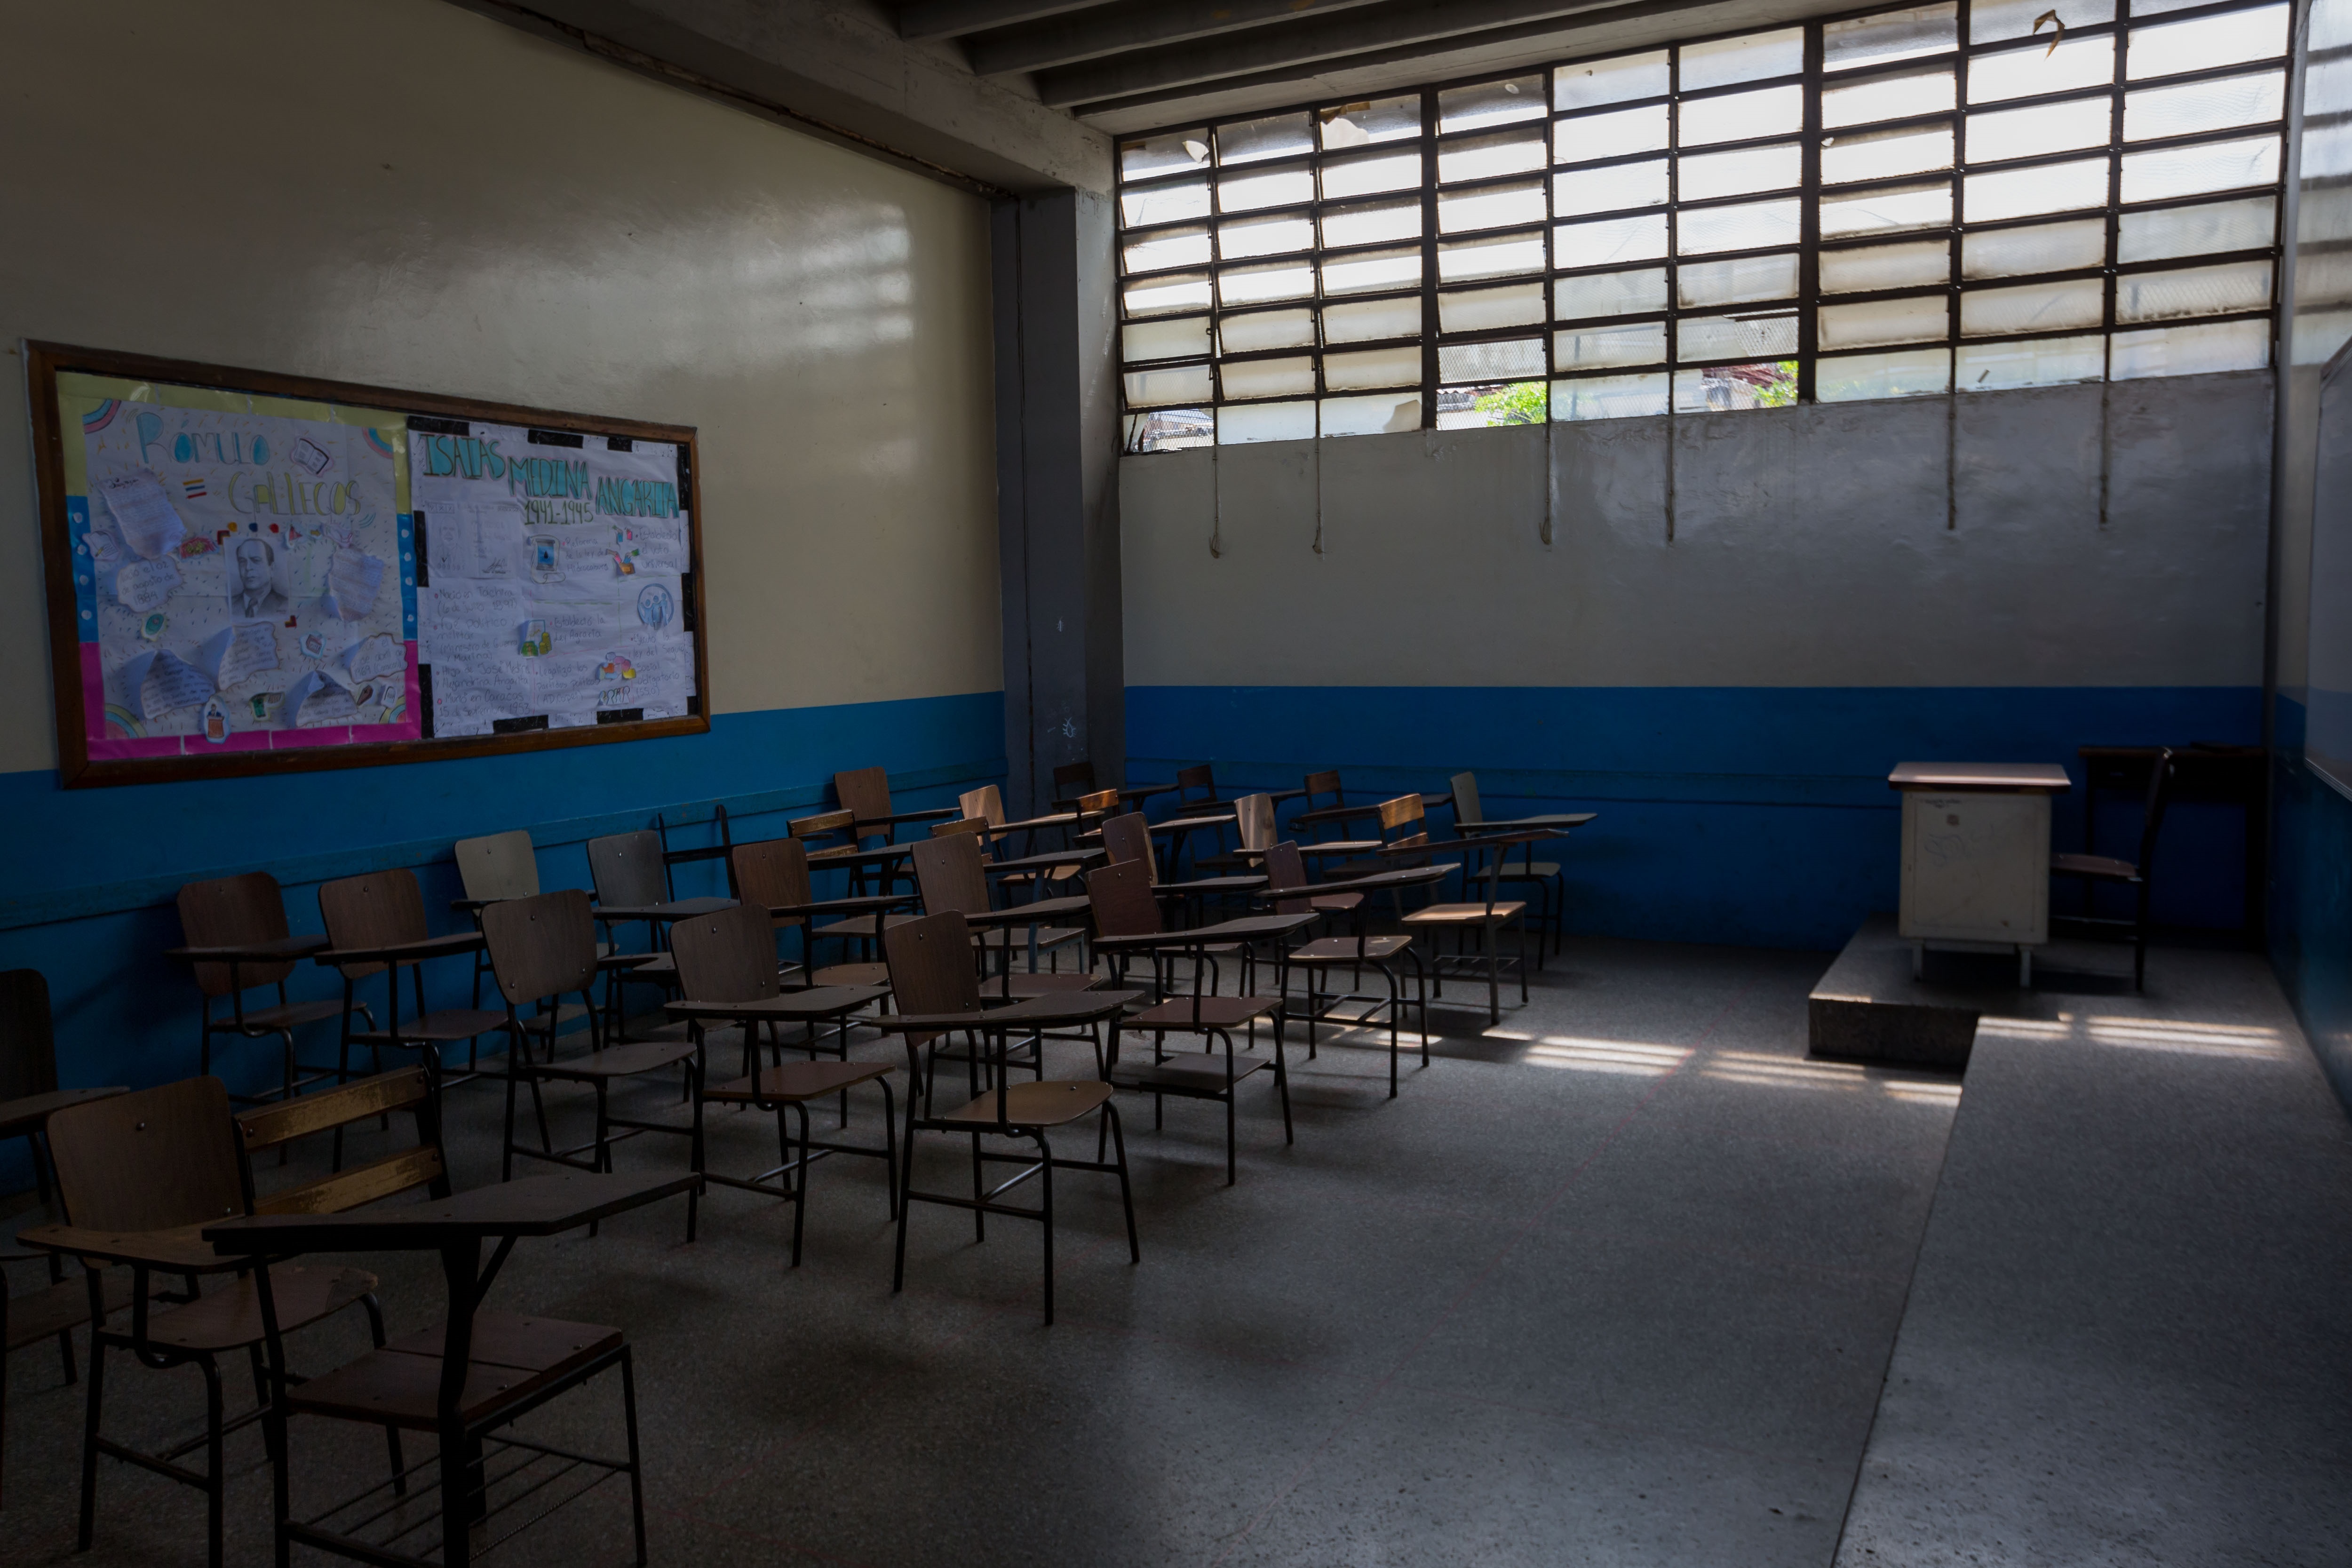 Fundaredes: 78 % de los alumnos de zonas rurales en Venezuela han desertado para unirse al ELN